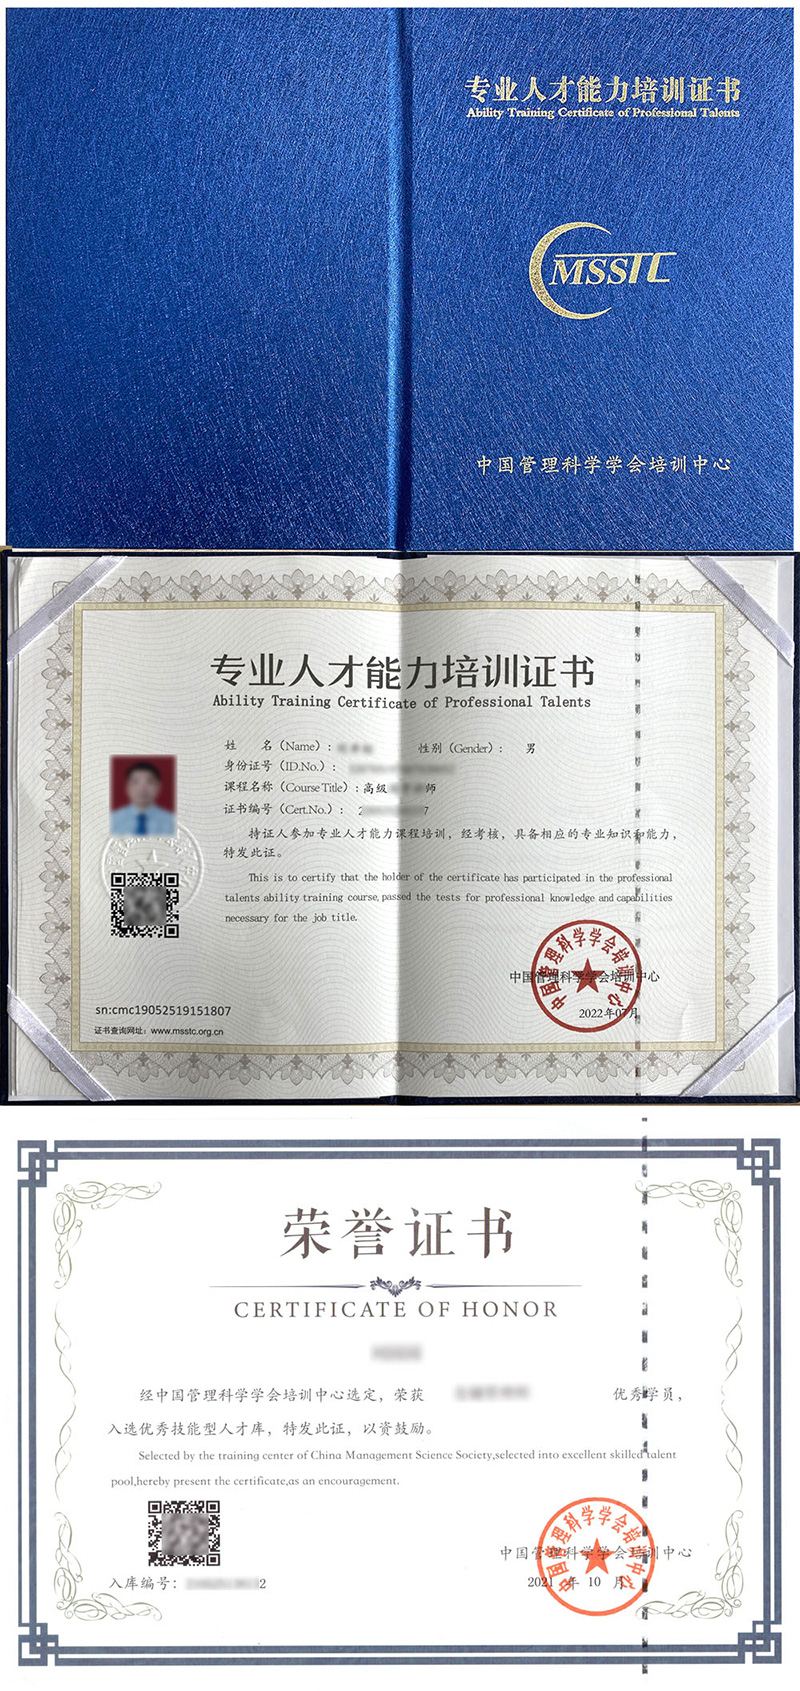 中国管理科学学会培训中心 专业人才能力培训证书 信息安全师证证书样本